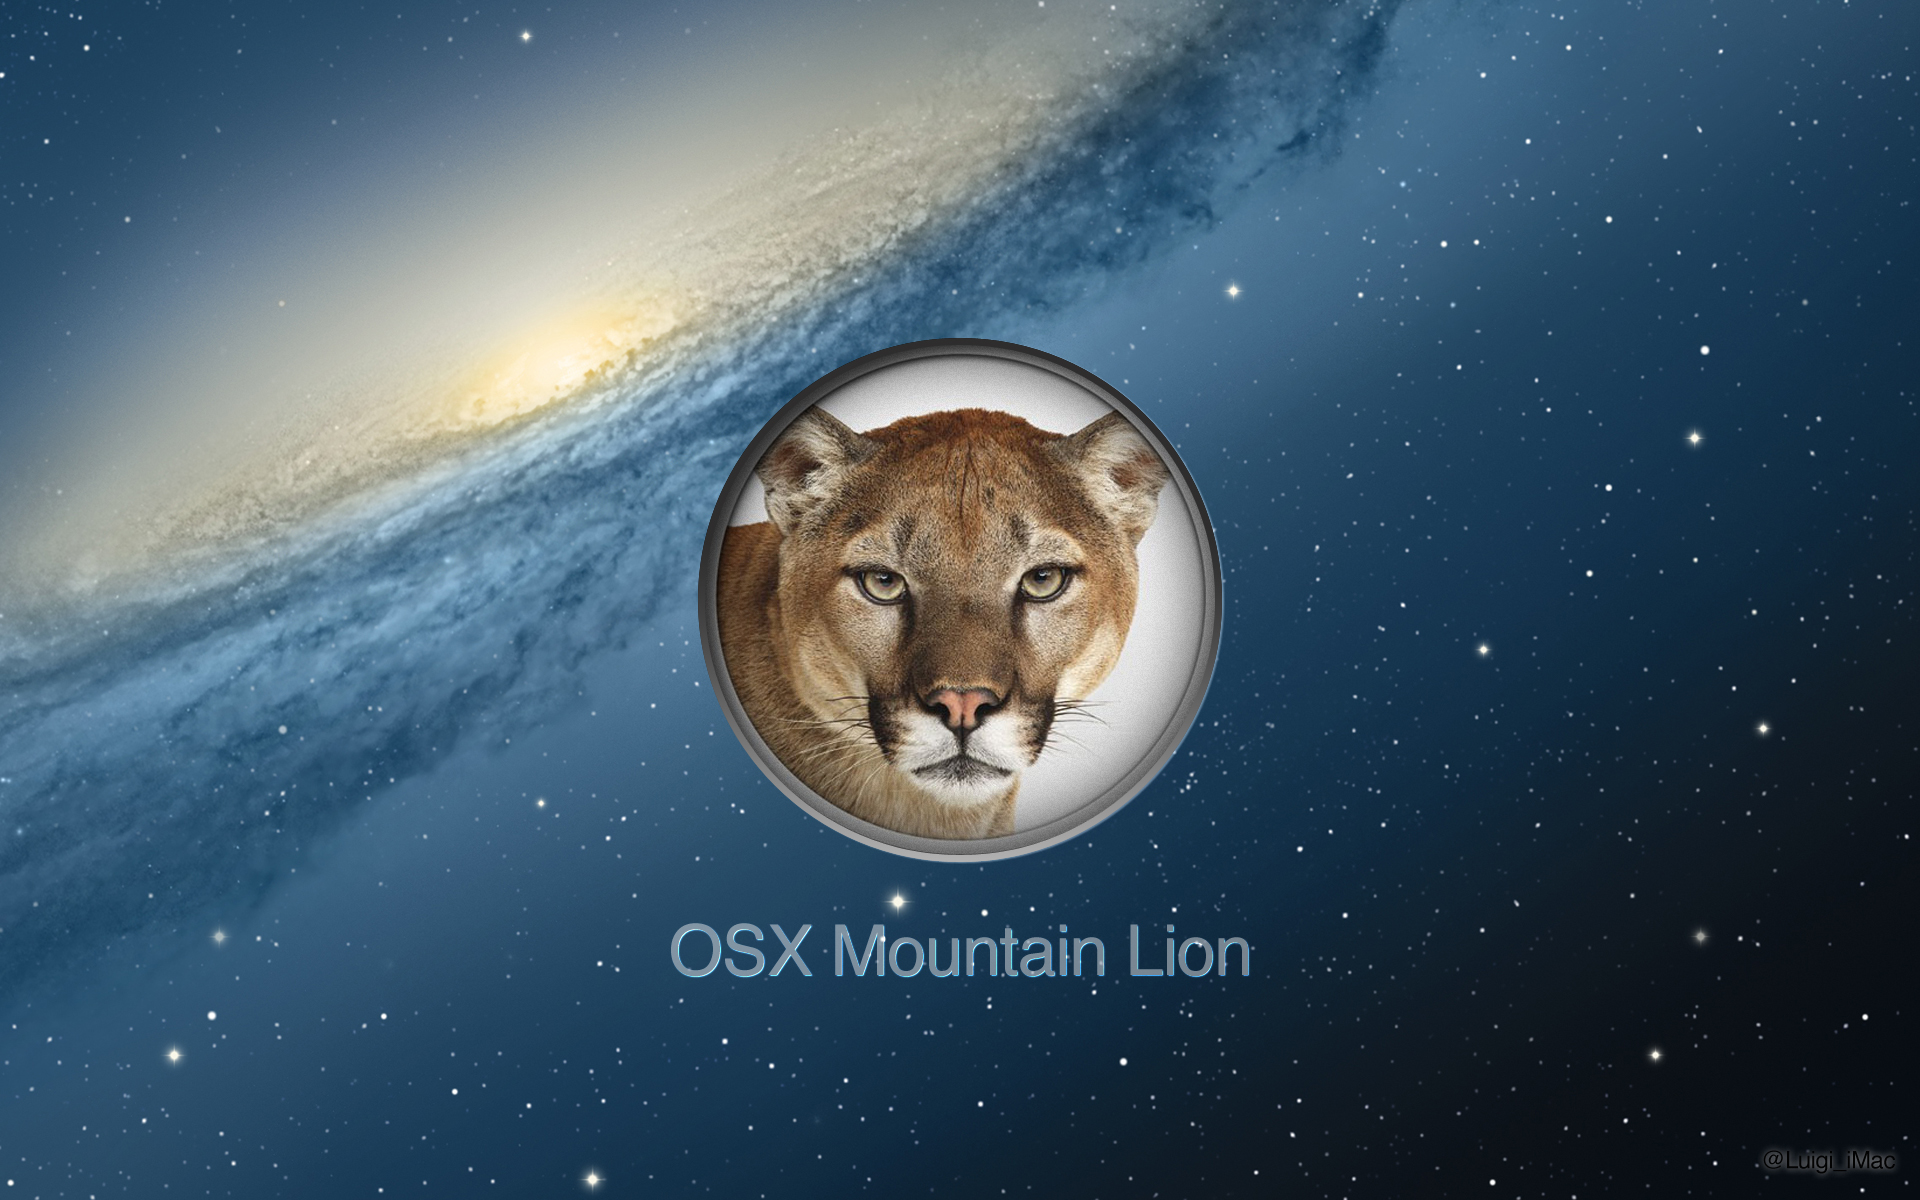 osx_mountain_lion___1920_x_1200_by_luigi_imac-d4q0pbs